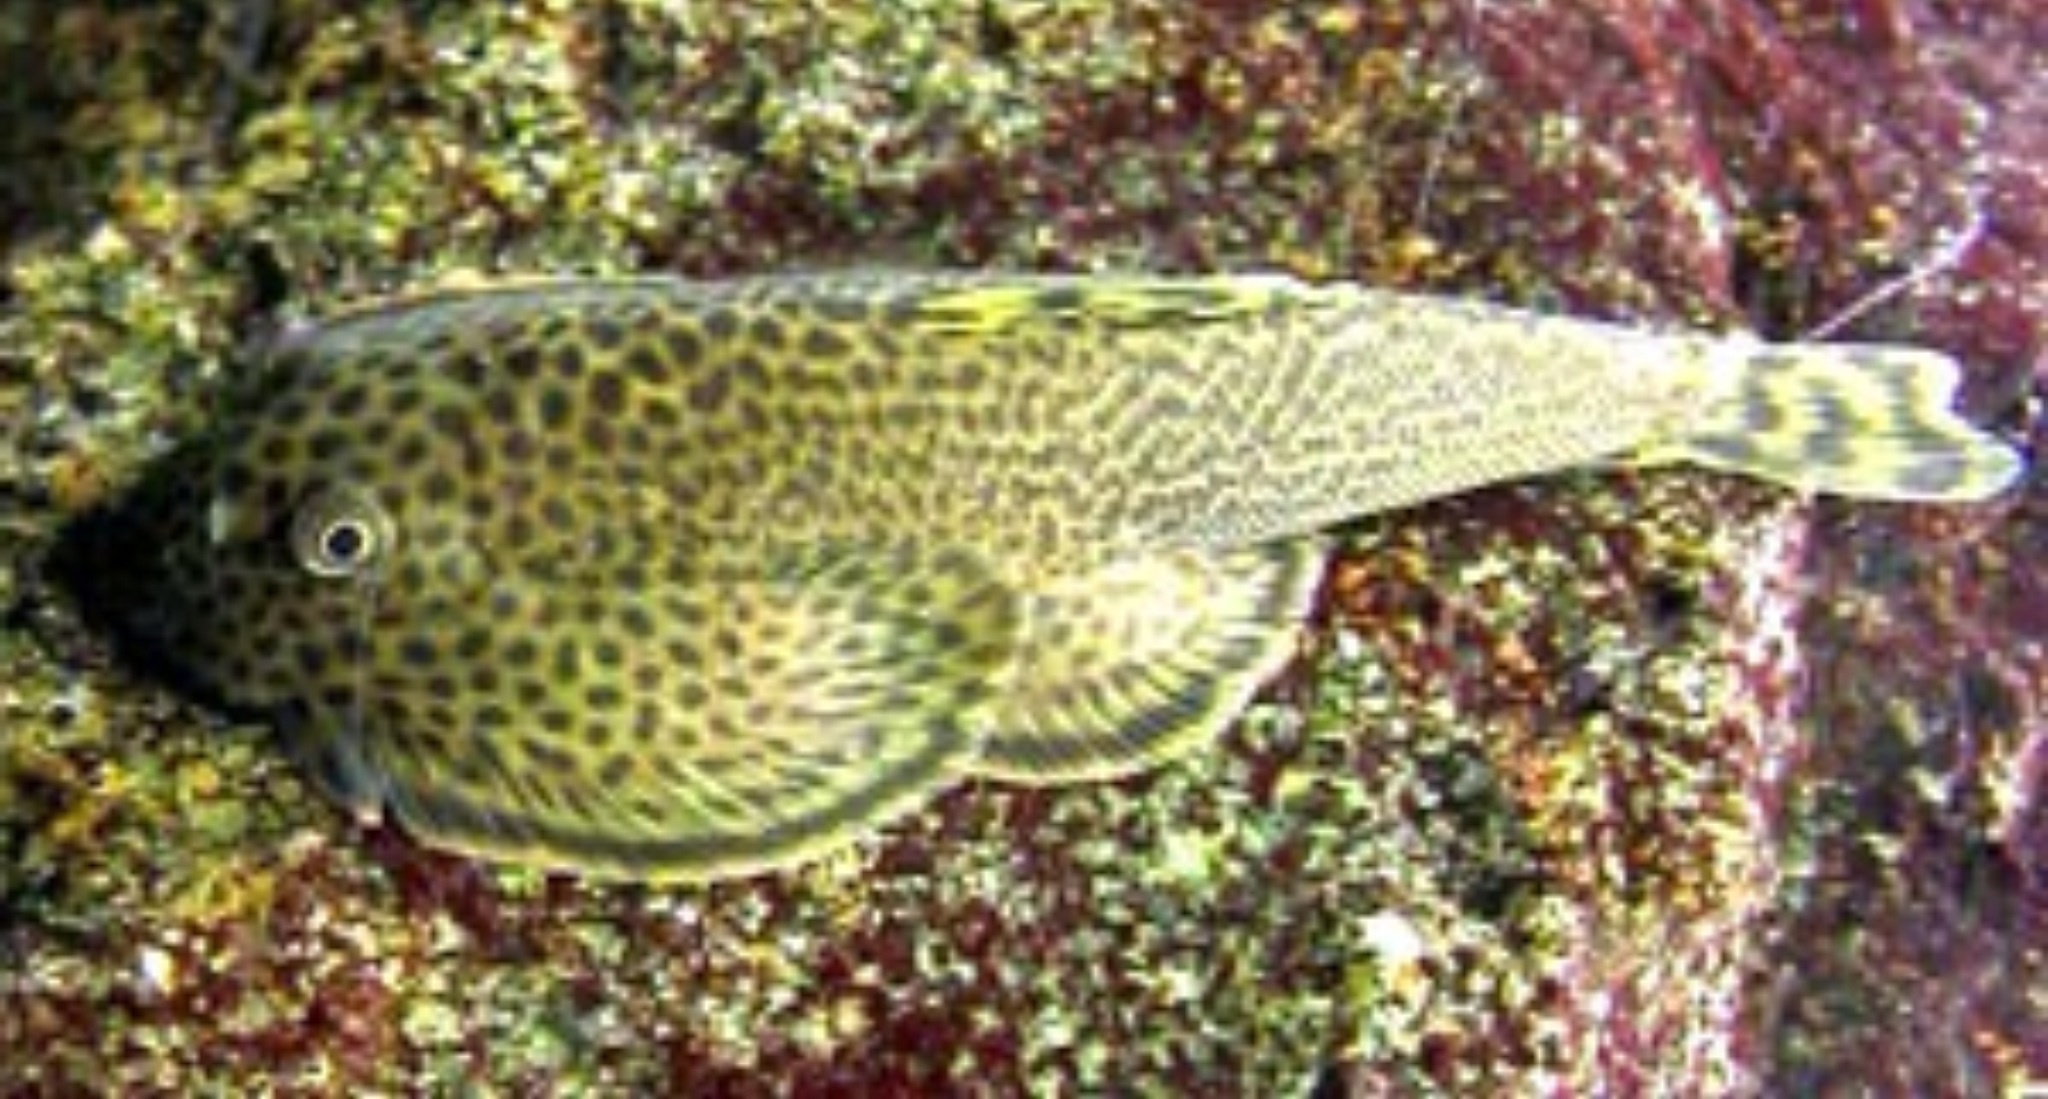 貴州爬岩鰍 Beaufortia kweichowensis